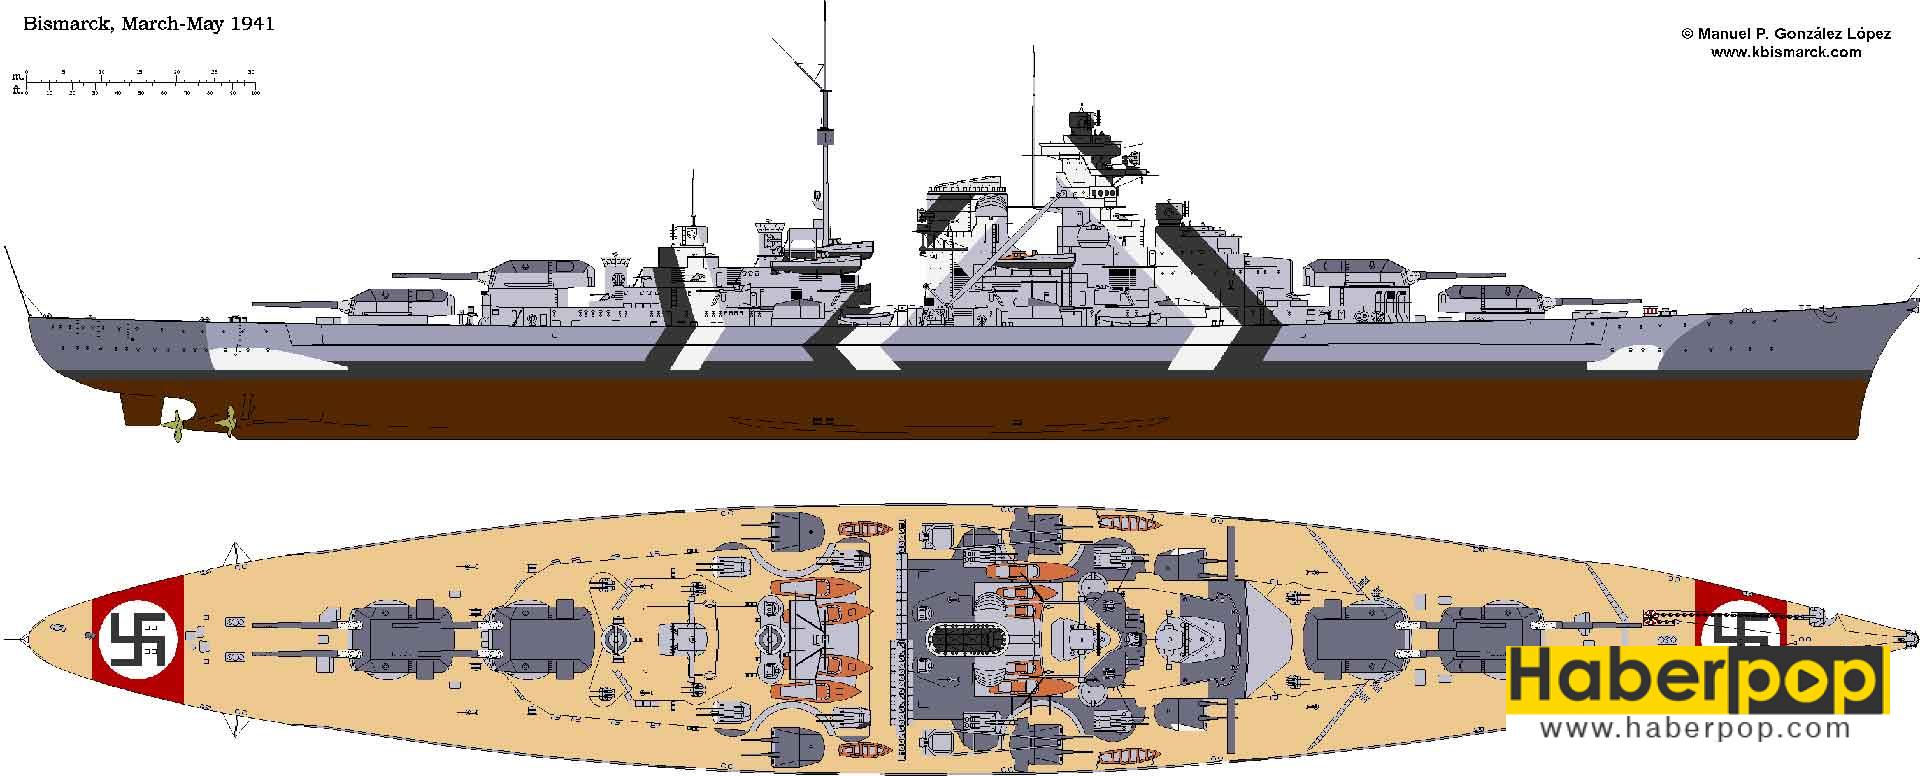 Dünyanın en büyük ve en güçlü savaş gemileri: Bismarck